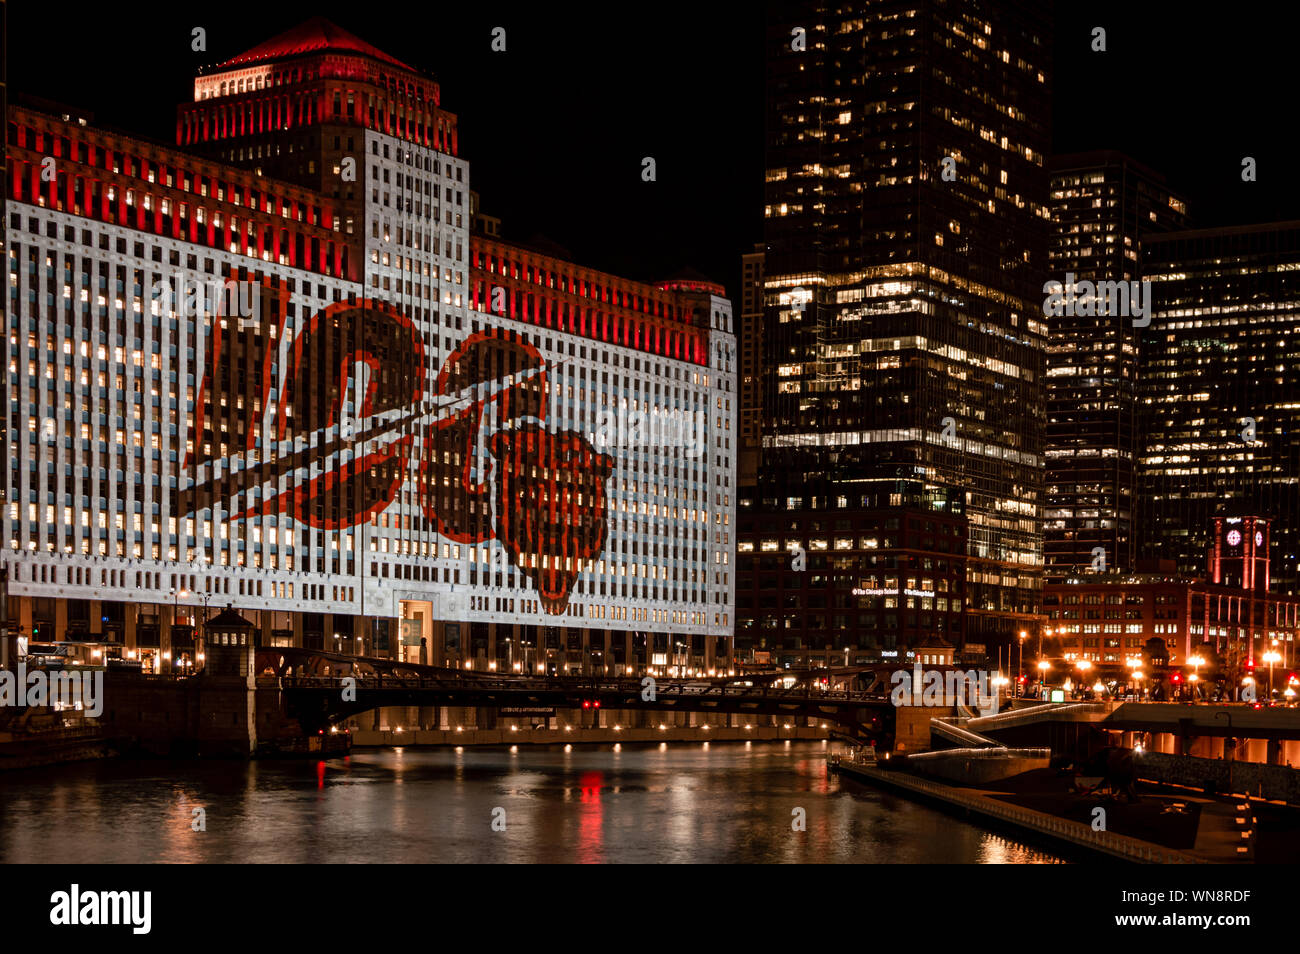 Chicago, Vereinigte Staaten - 5 September, 2019: Die Merchandise Mart feiert den 100 Spielen der Saison der Chicago Bears NFL mit projizierten Wall Art bei Nacht Stockfoto